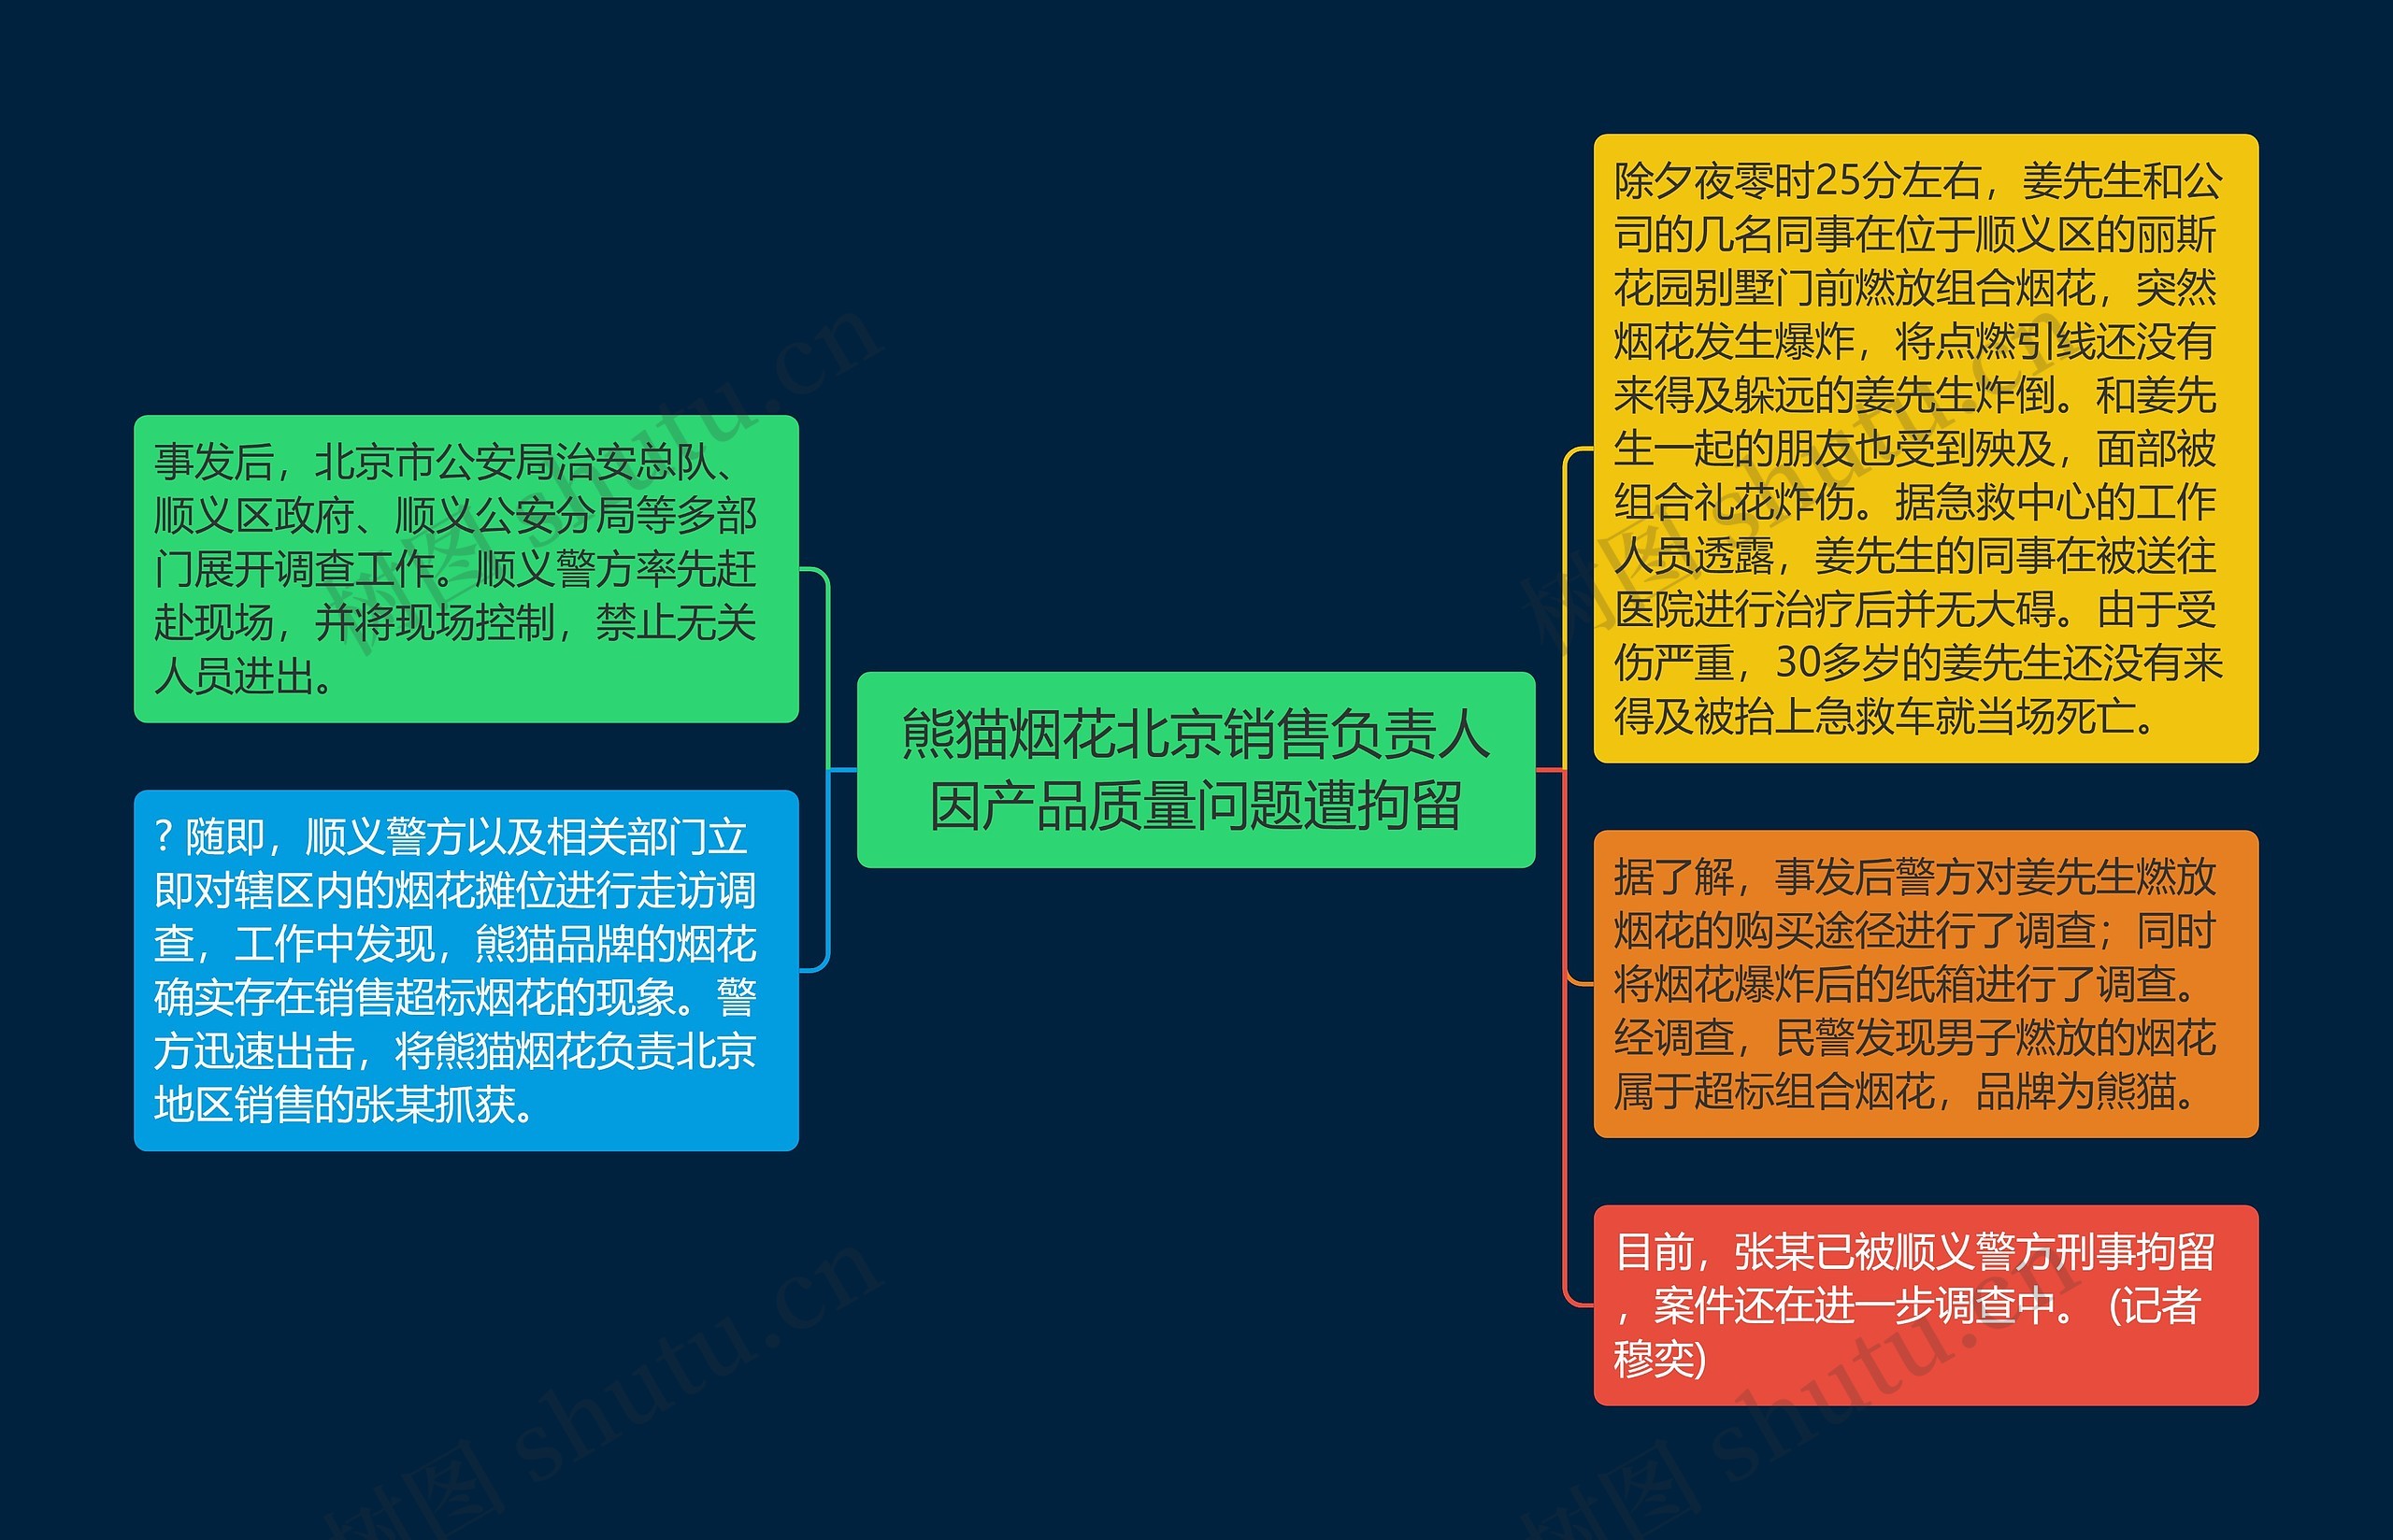 熊猫烟花北京销售负责人因产品质量问题遭拘留思维导图